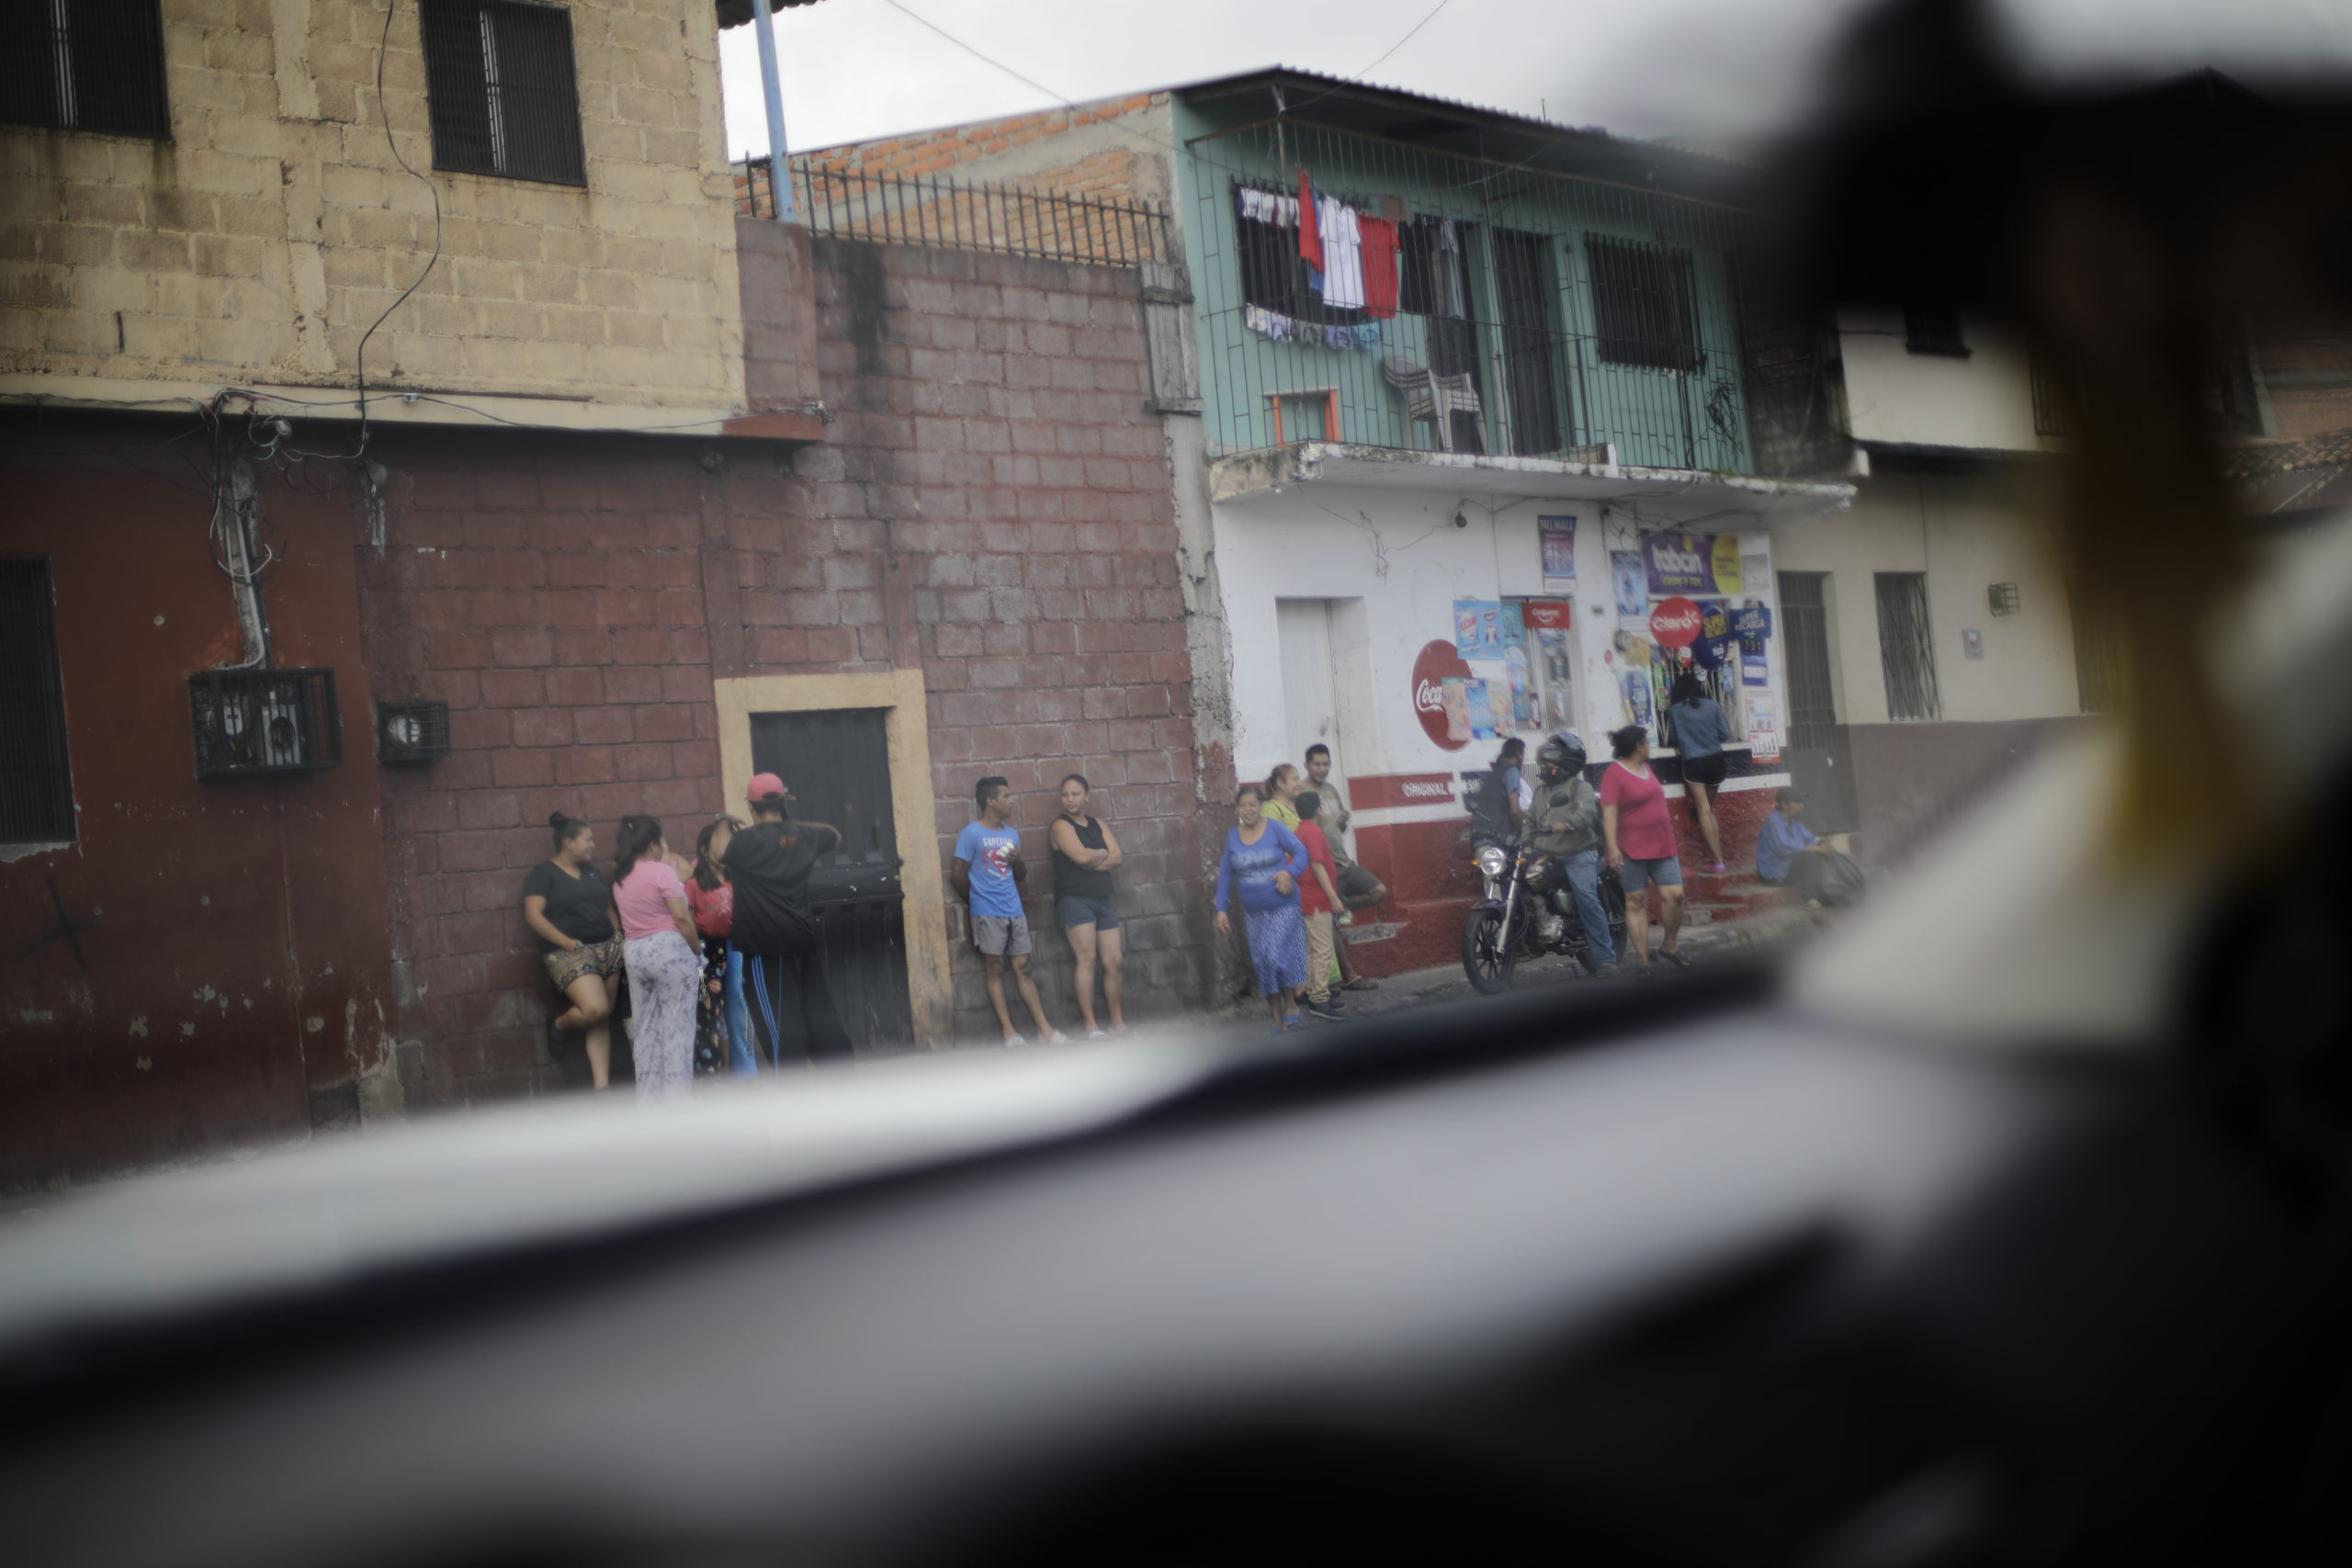 Habitantes de la zona del barrio Morazán observan la escena de un crimen donde fue encontrado el cuerpo de una persona desconocida. Foto CC/Jorge Cabrera